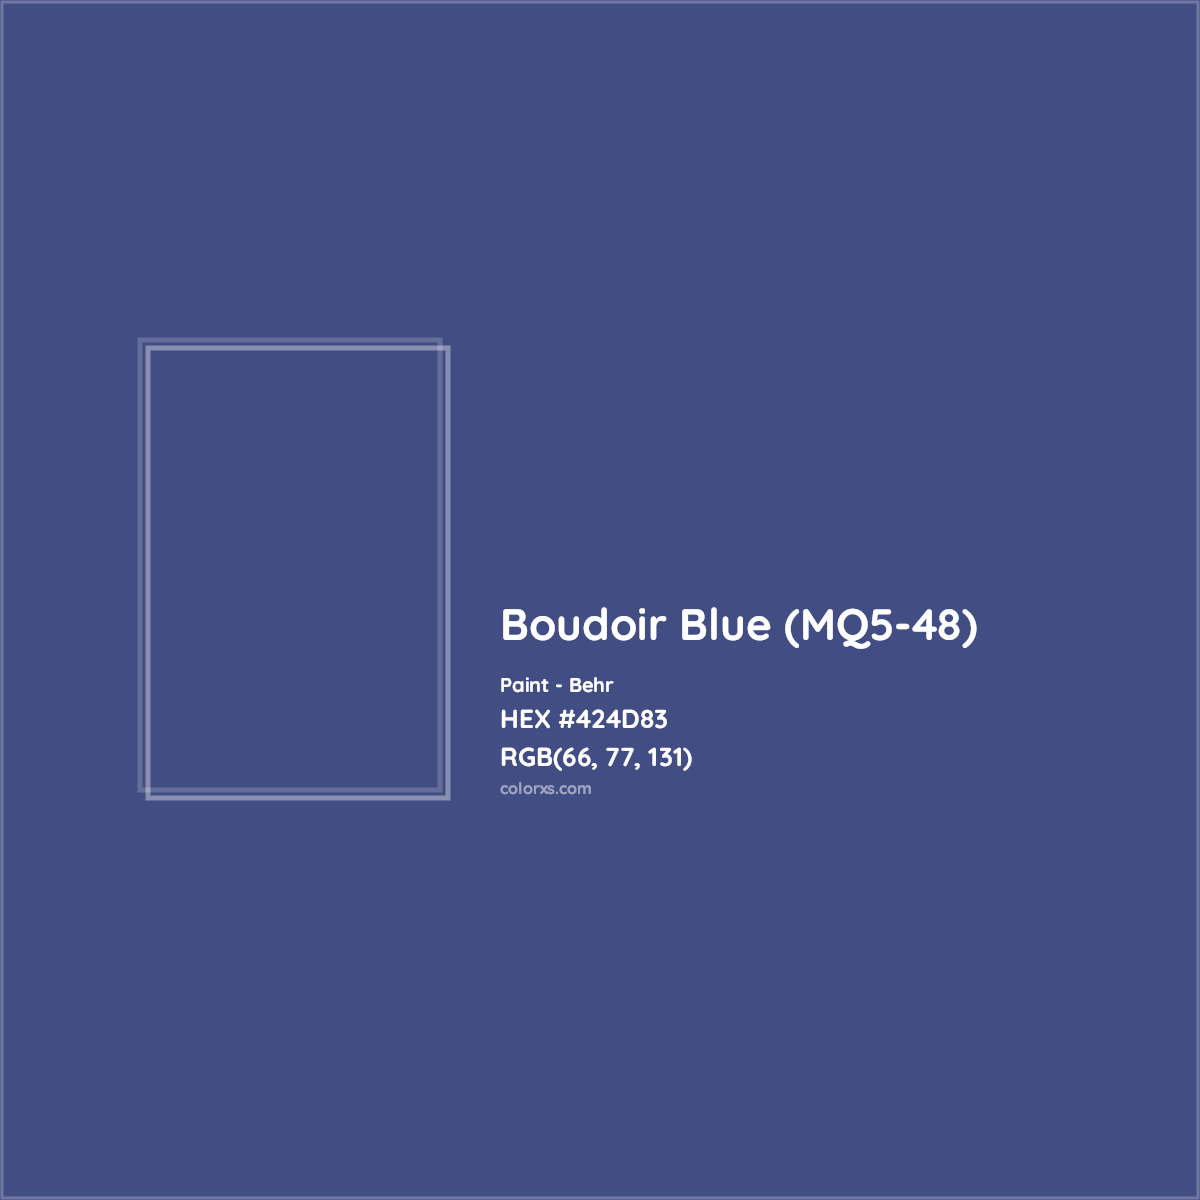 HEX #424D83 Boudoir Blue (MQ5-48) Paint Behr - Color Code